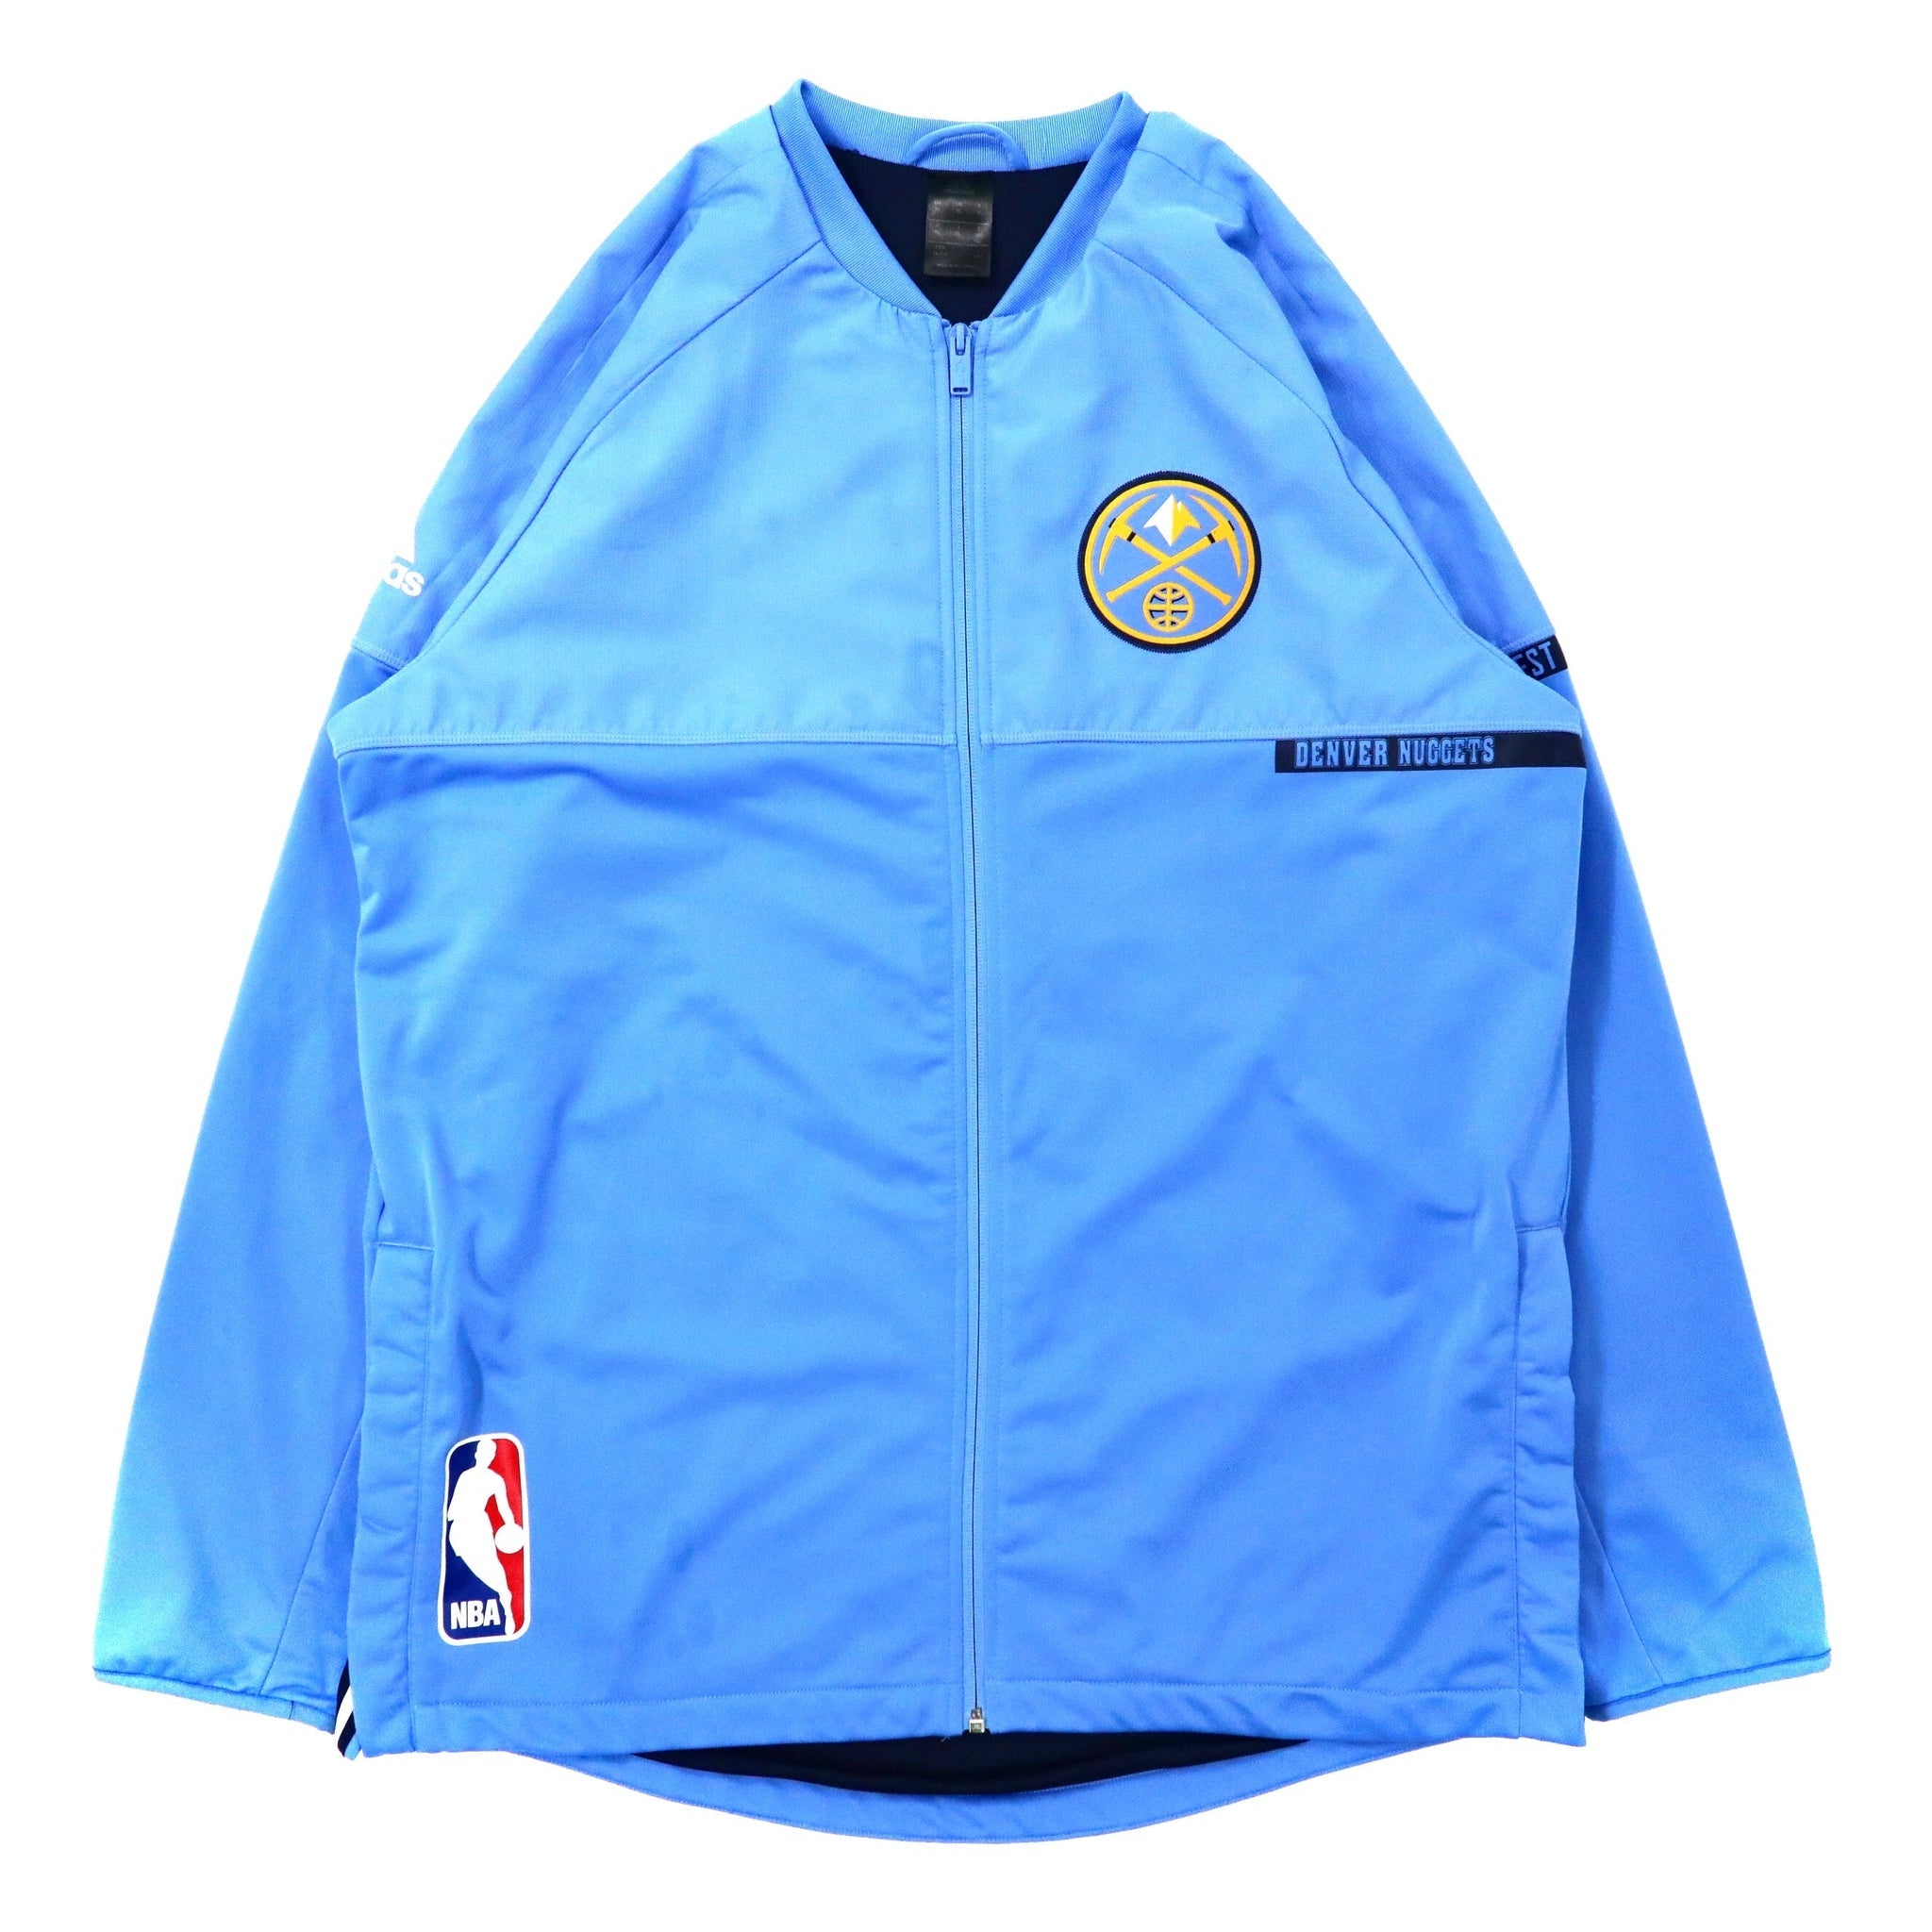 Adidas x NBA Big Size Track Jacket 4XO Blue Polyester Denver ...